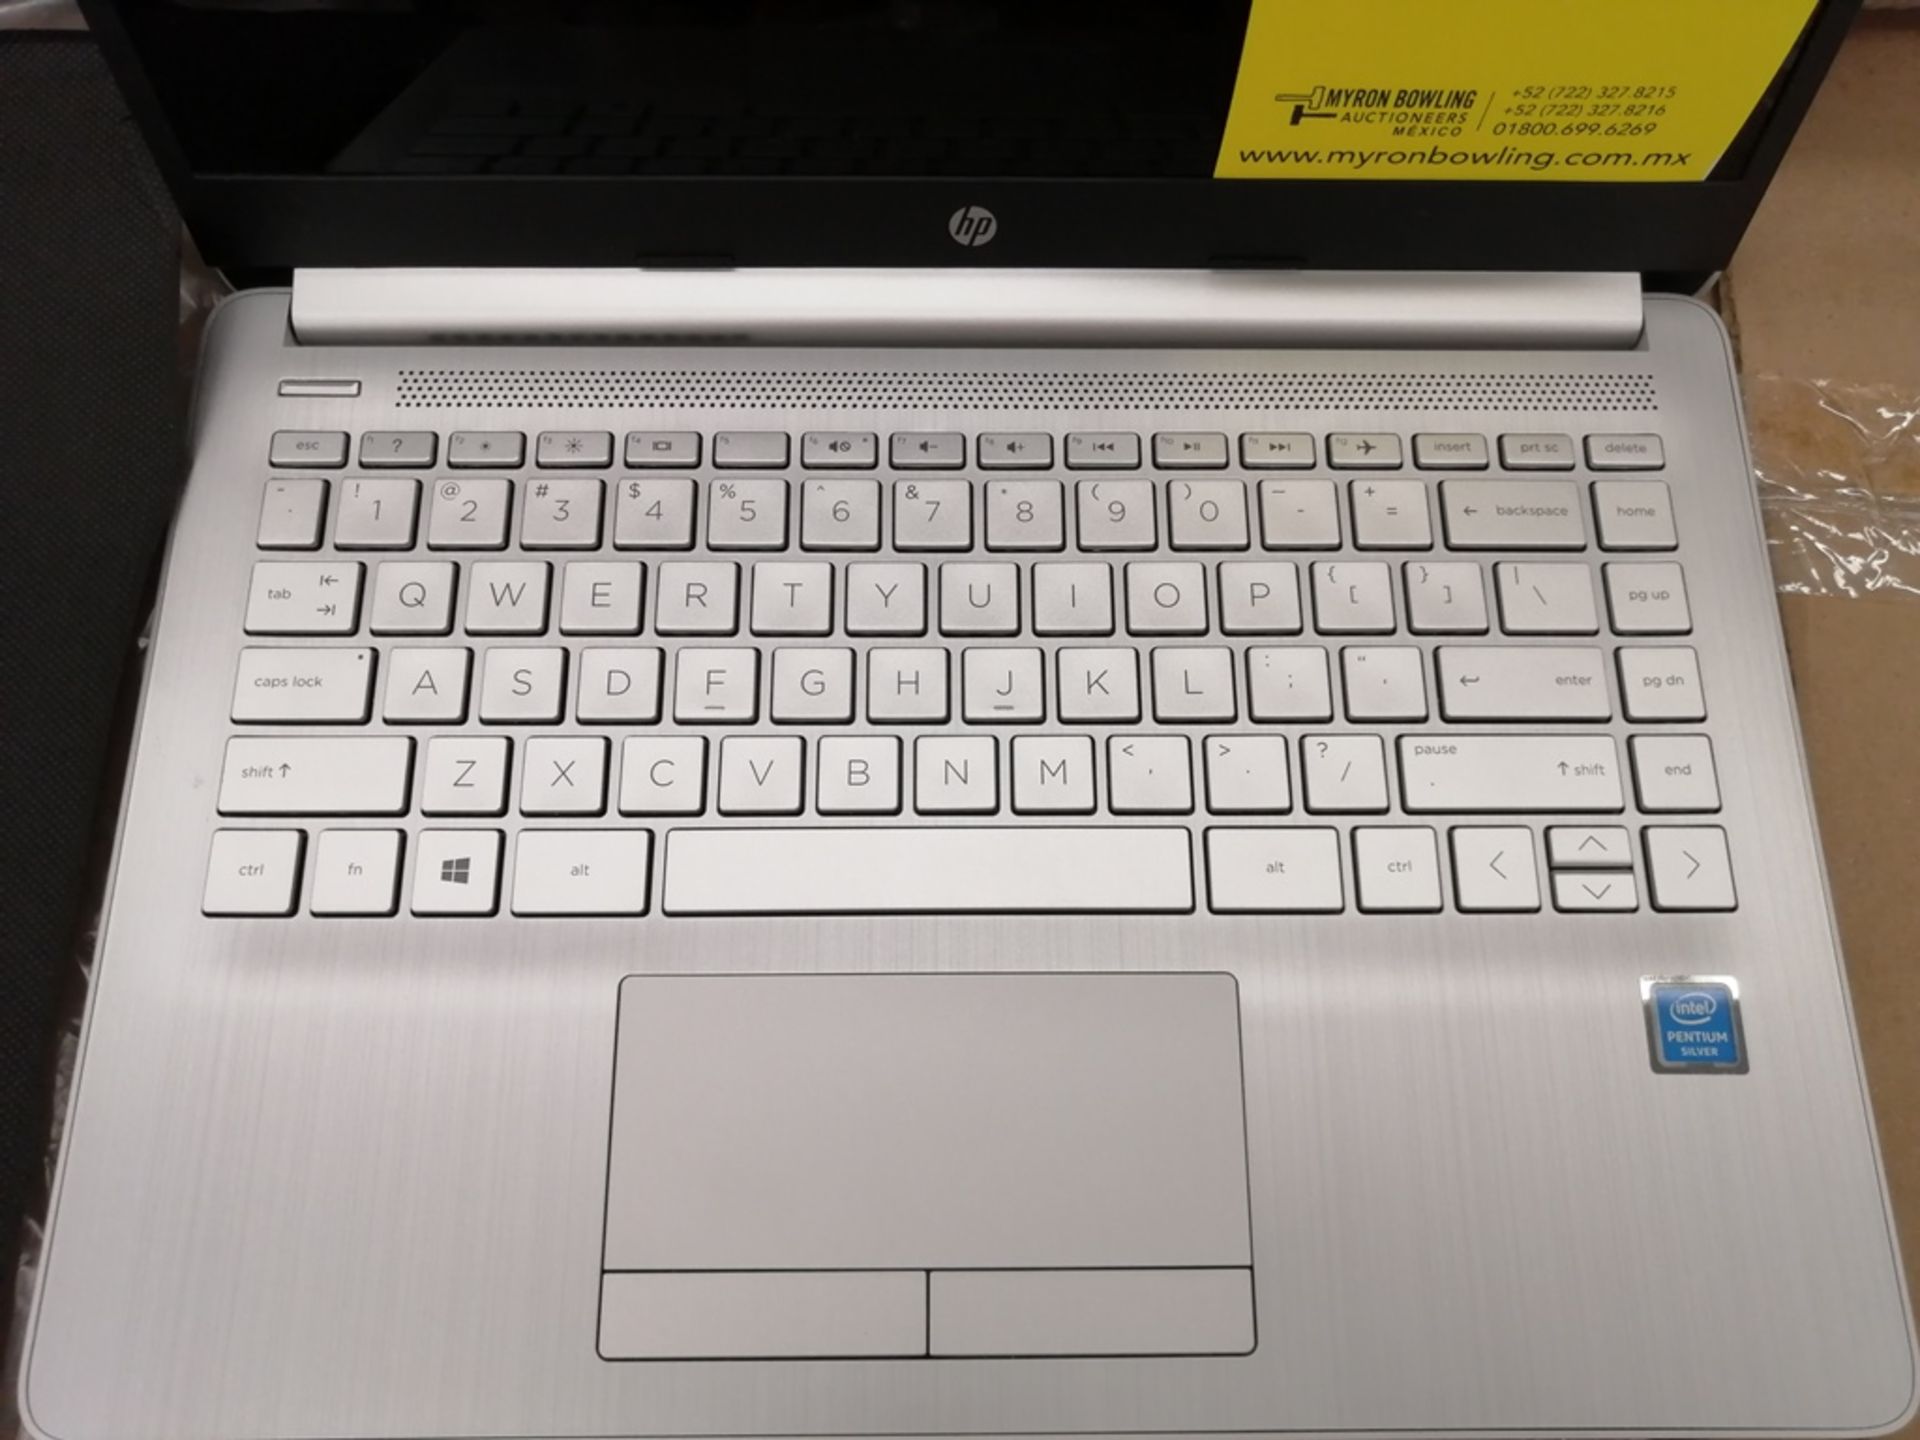 Lote de artículos contiene: 1 Computadora tipo Laptop marca HP, modelo 14CF2033, serie 5CG1206WQM, - Image 7 of 26